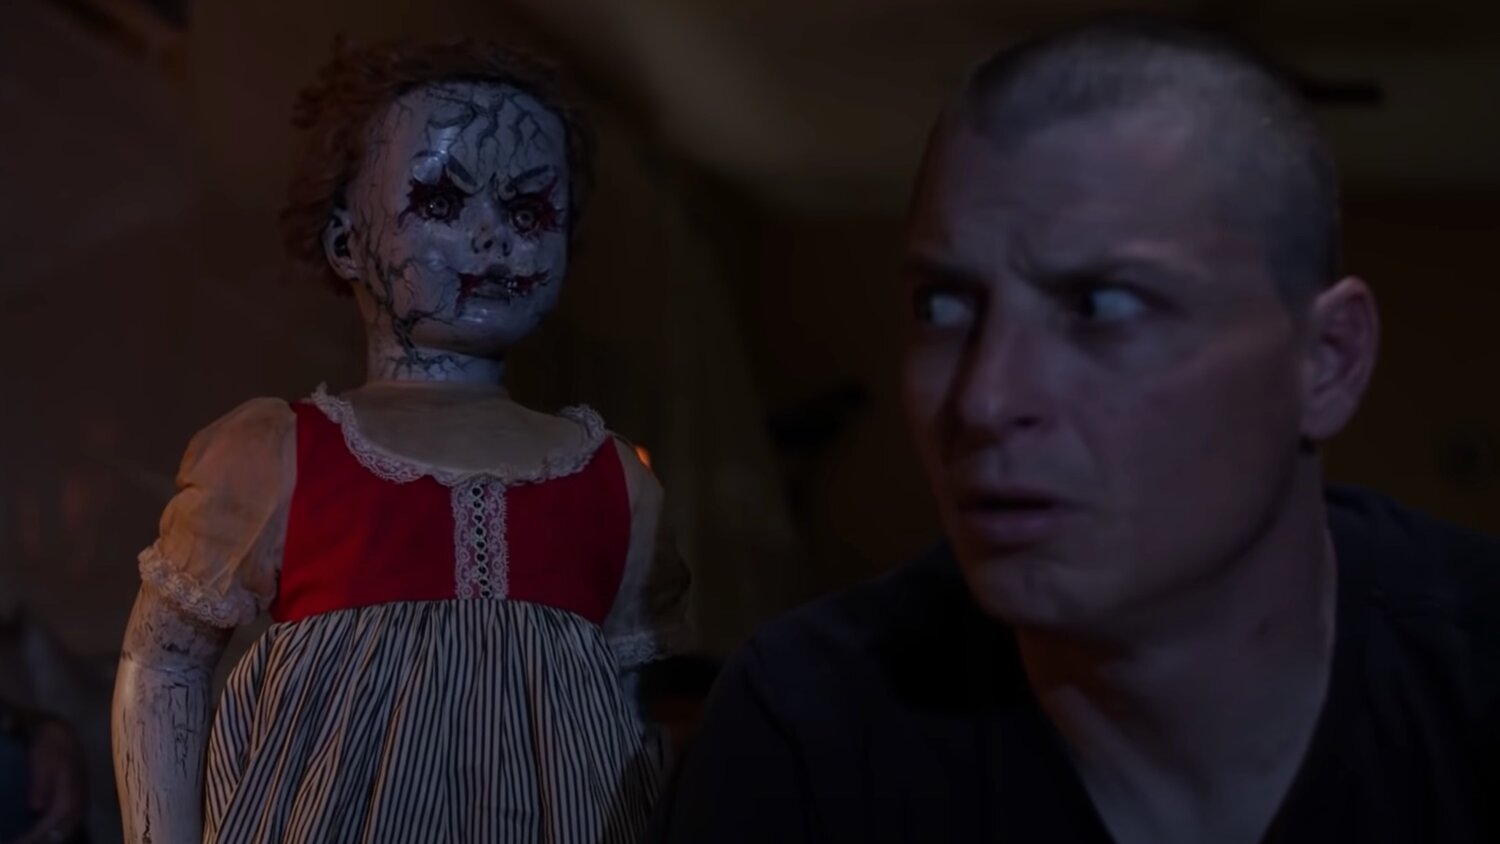 Creepy Horror Short Film DOLL FOR EDGAR - 